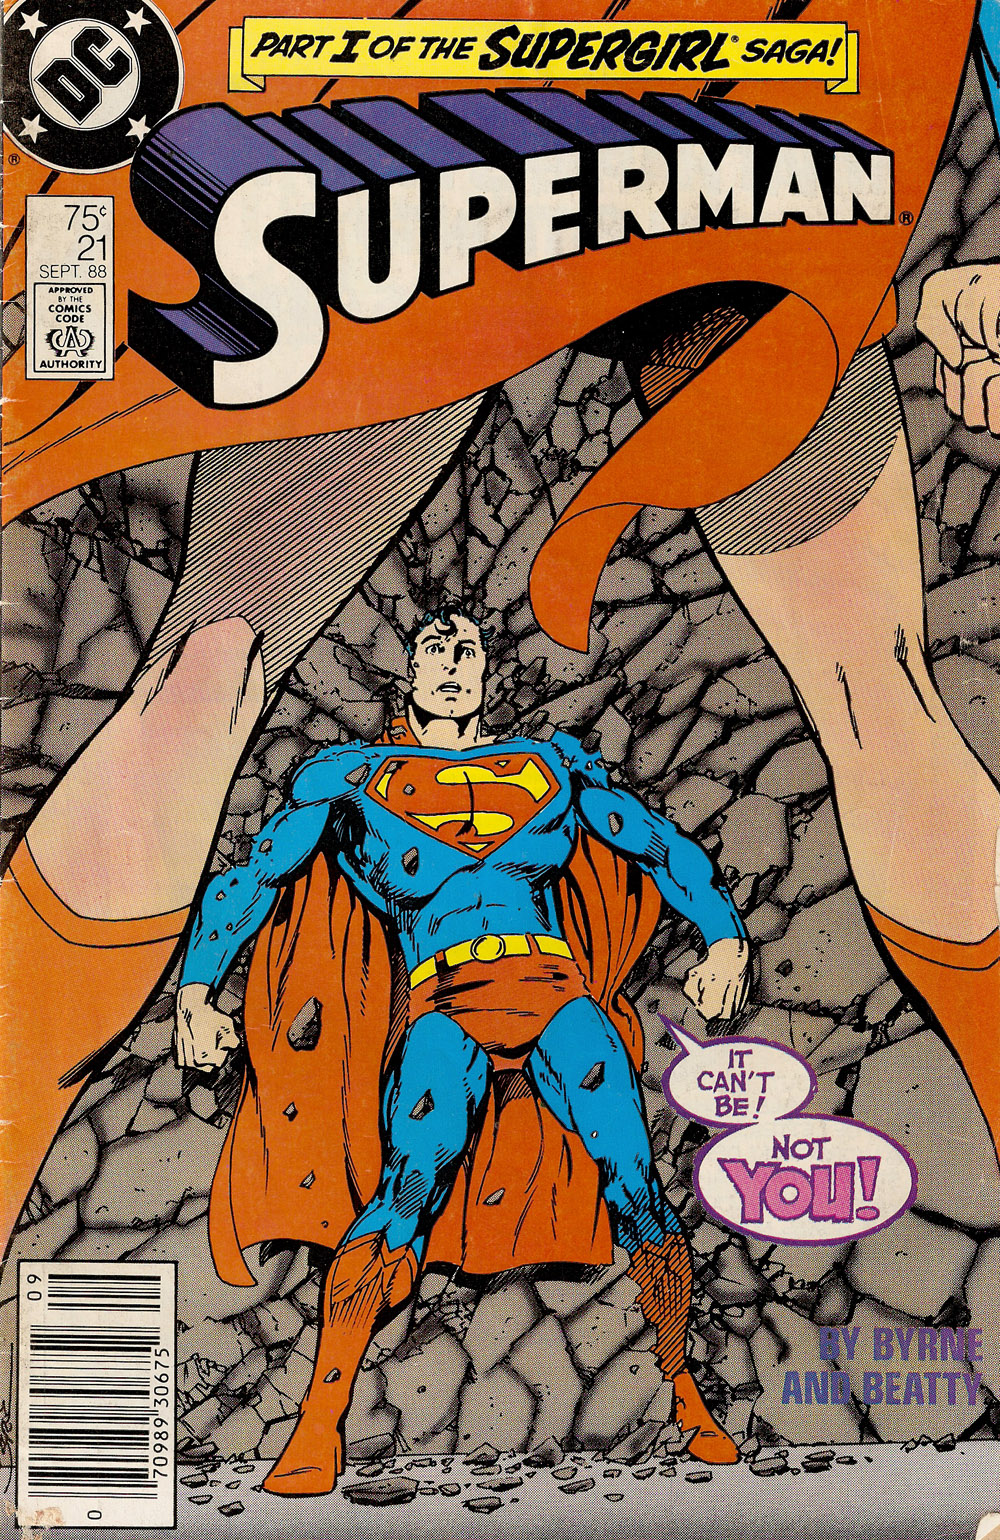 Superman (Vol. 2) #21